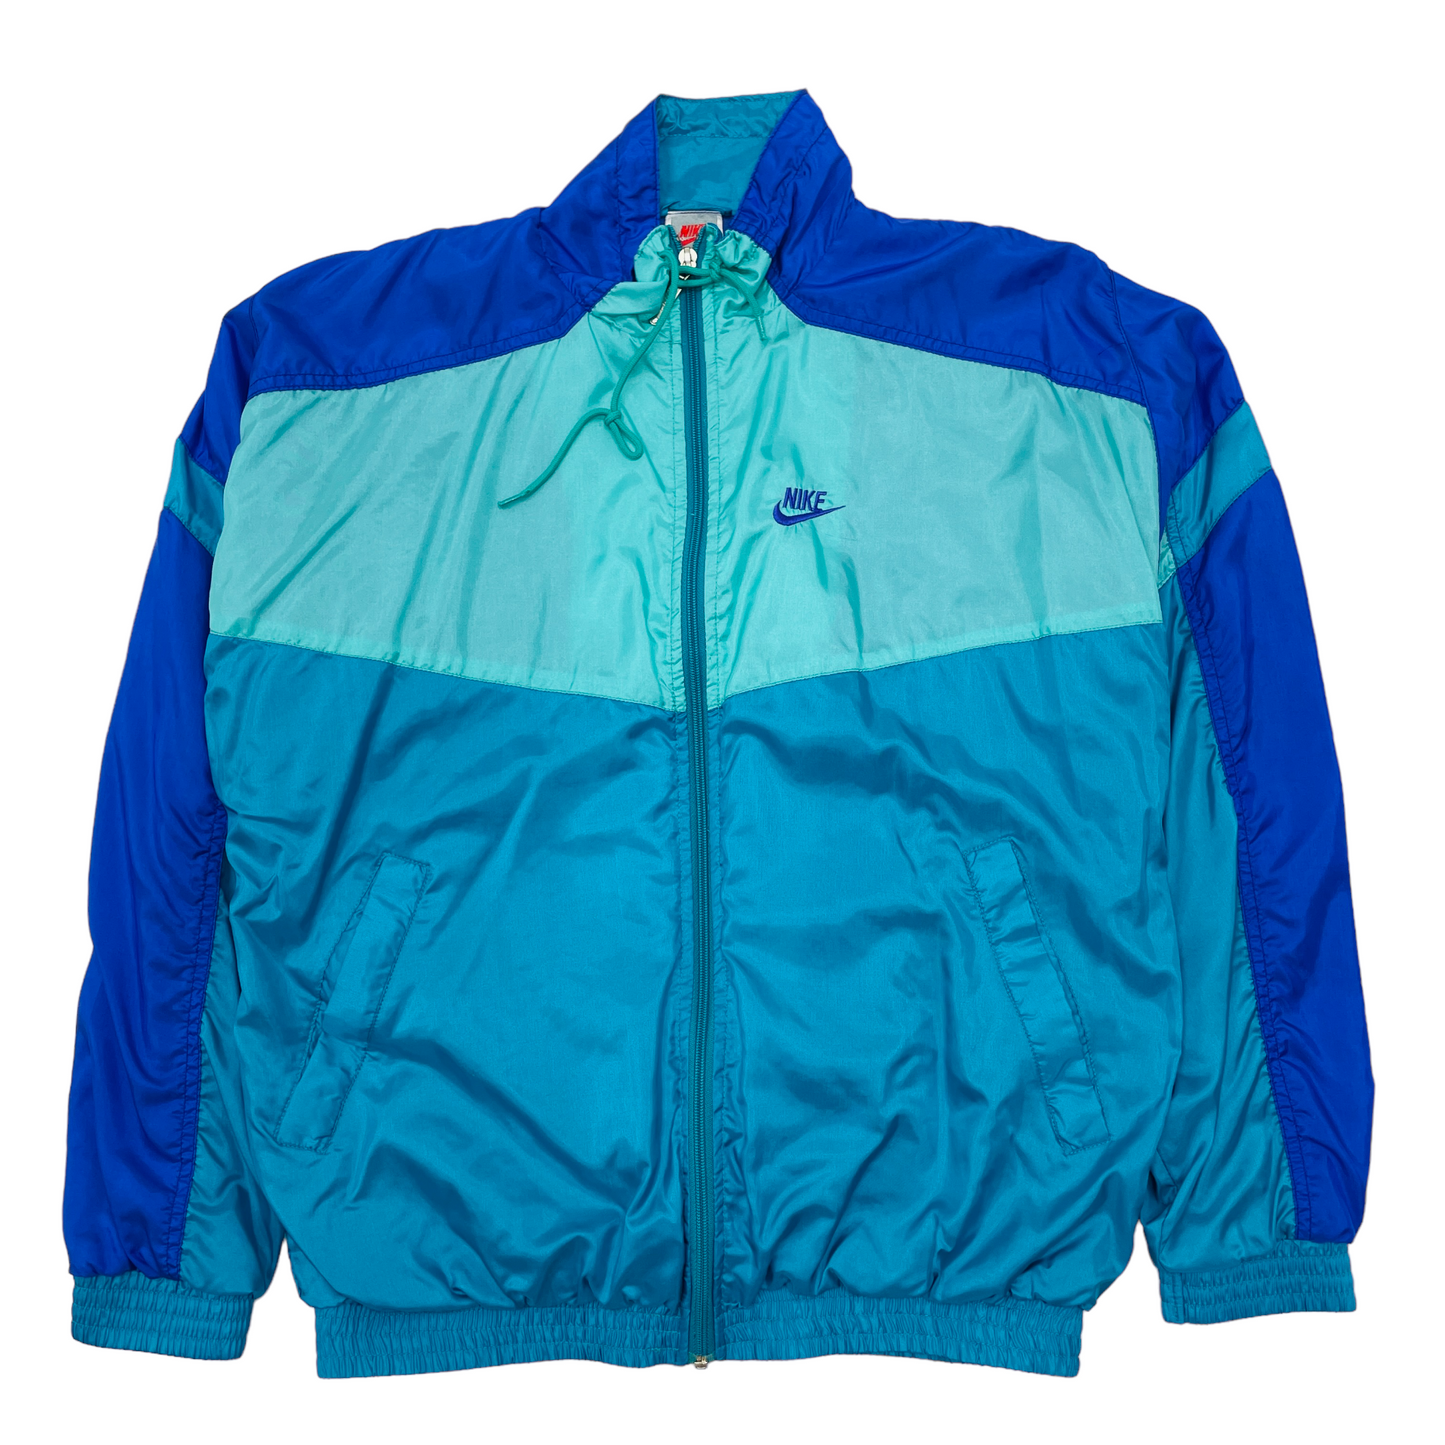 90s tracker jacket